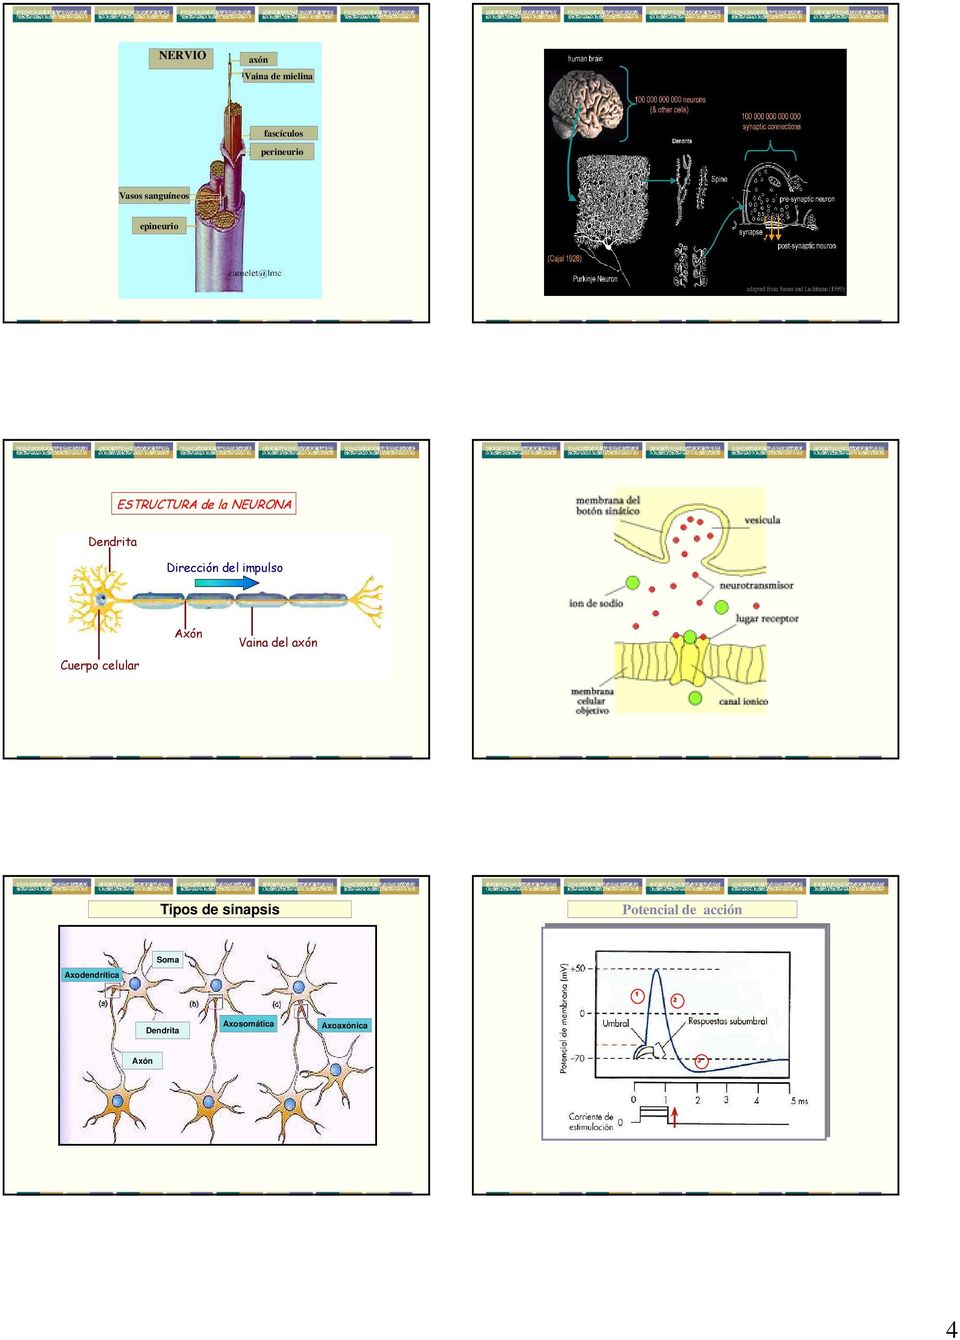 Cuerpo celular Axón Vaina del axón Tipos de sinapsis Potencial de